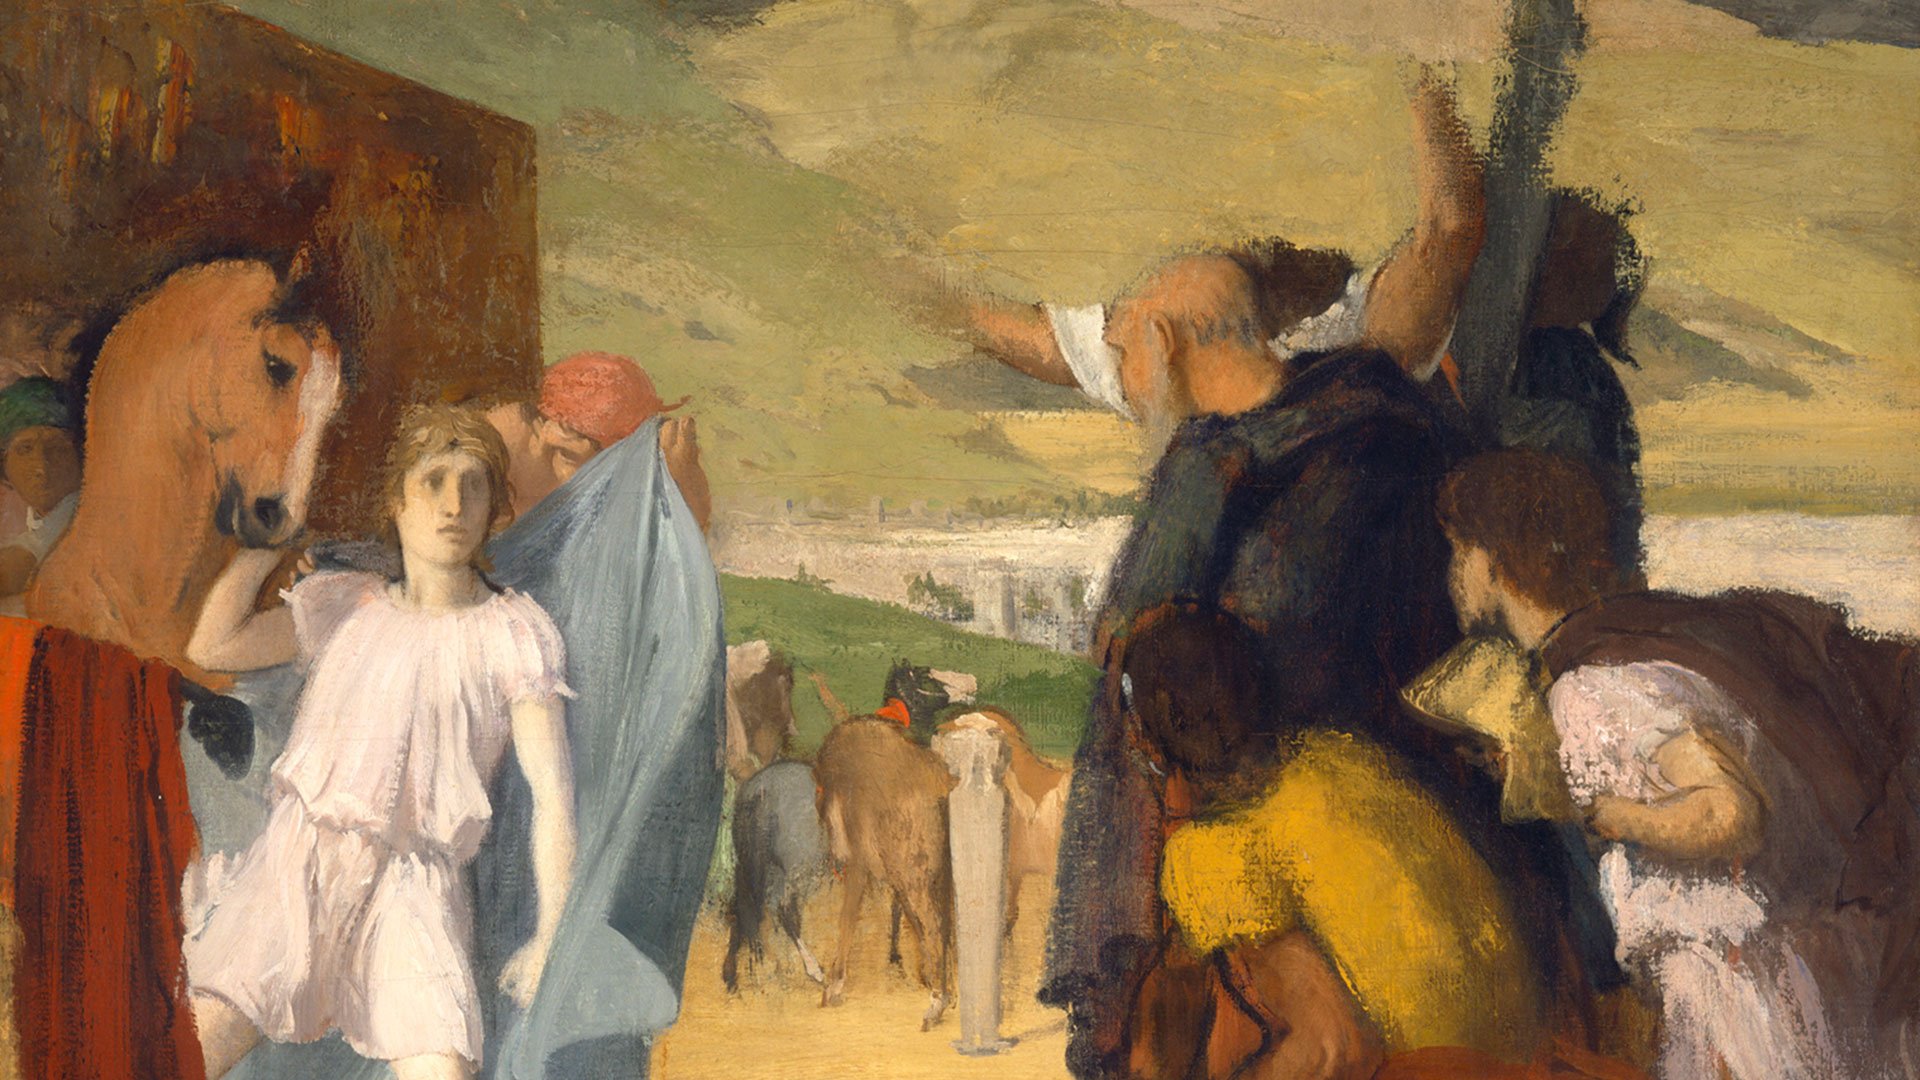 Zu sehen ist ein Gemälde Edgar Degas. Mehrere Personen halten zwei Pferde. Im Hintergrund sieht man noch mehr Pferde.